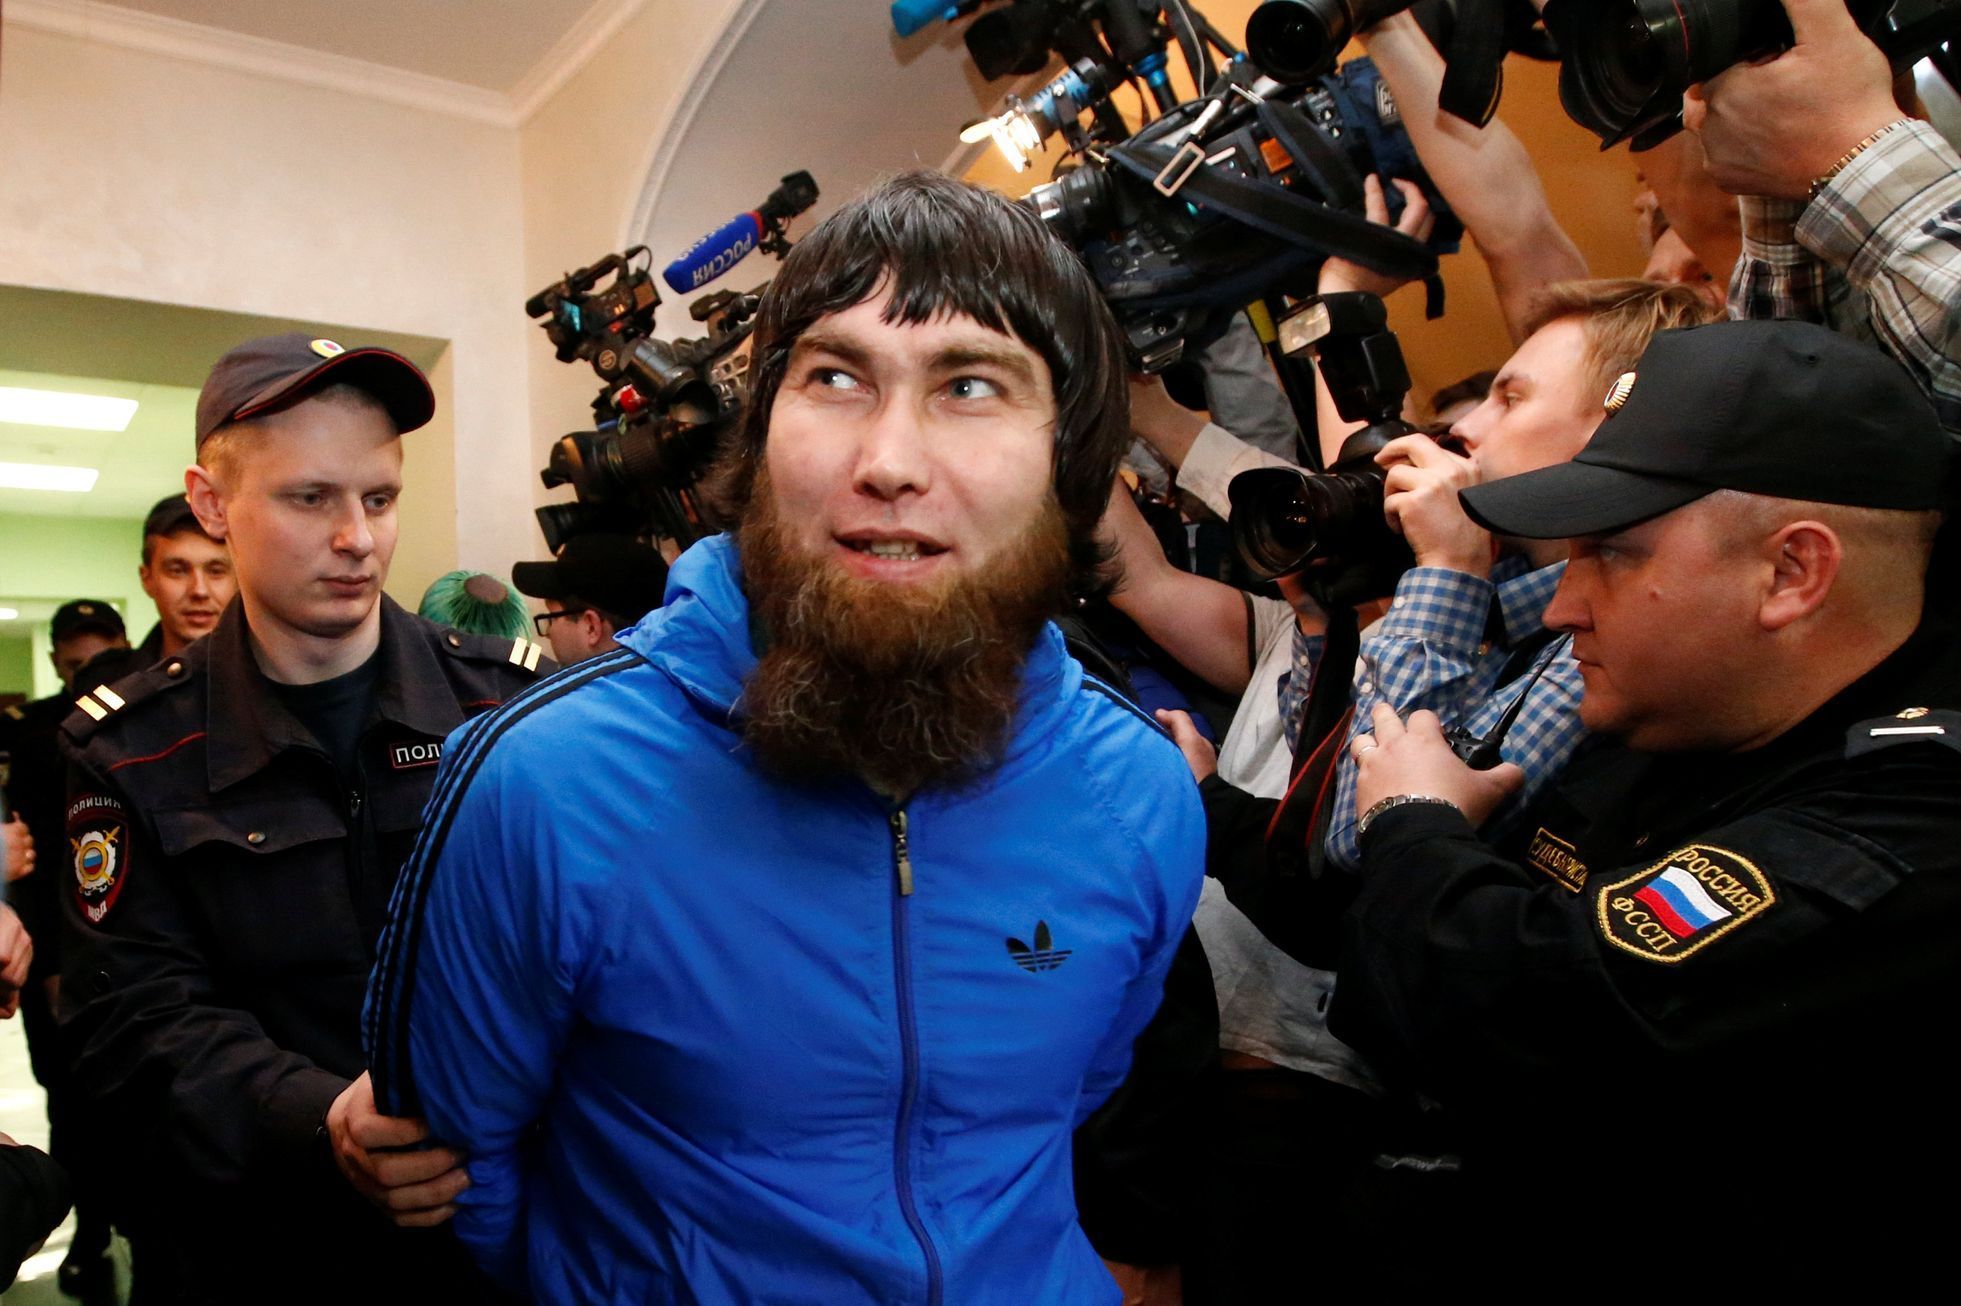 Anzor Gubašev během soudu k vraždě Borise Němcova.